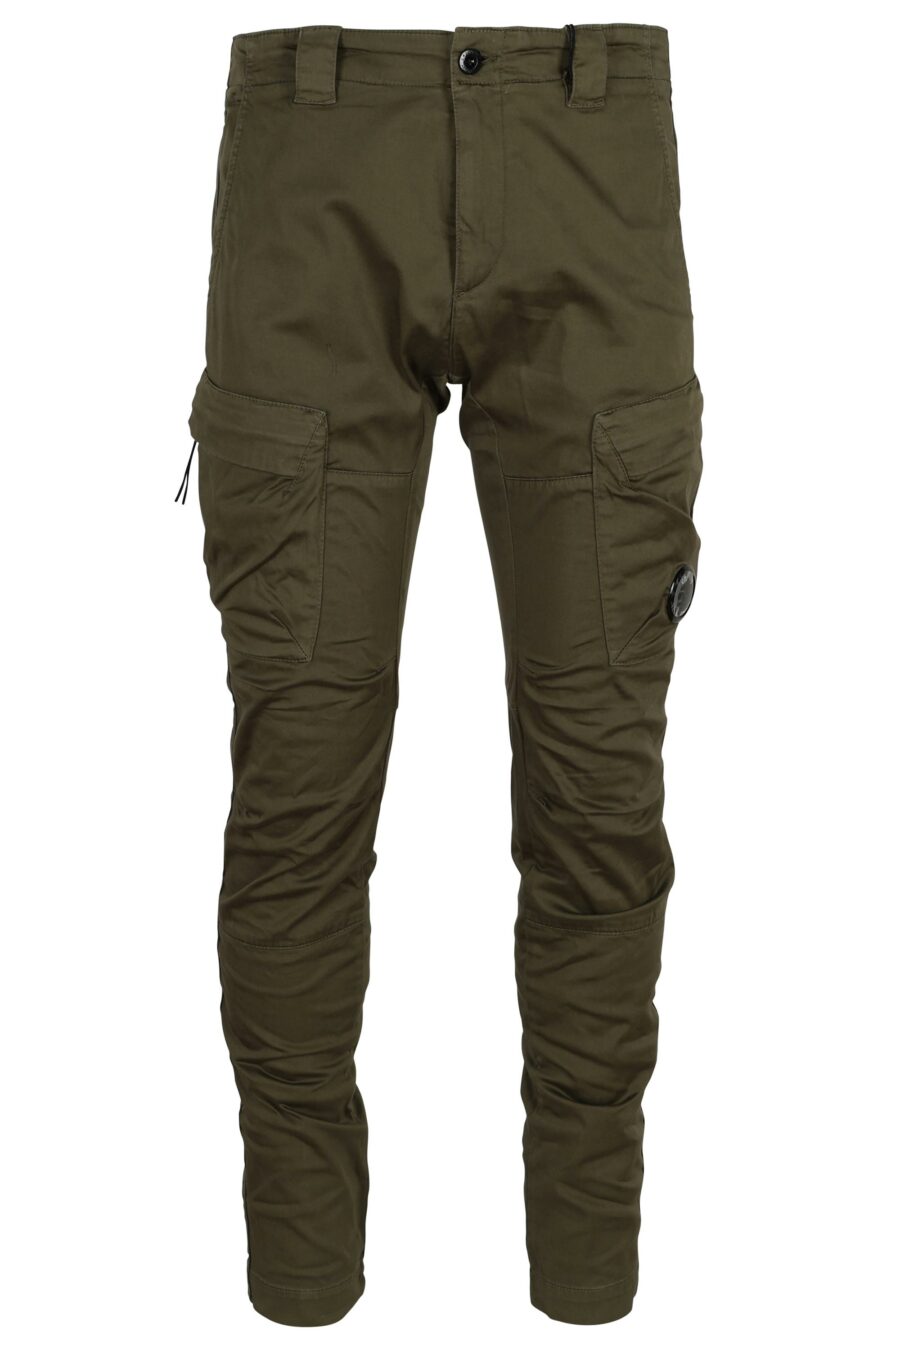 Pantalon cargo vert militaire avec lentille logo - 7620943722628